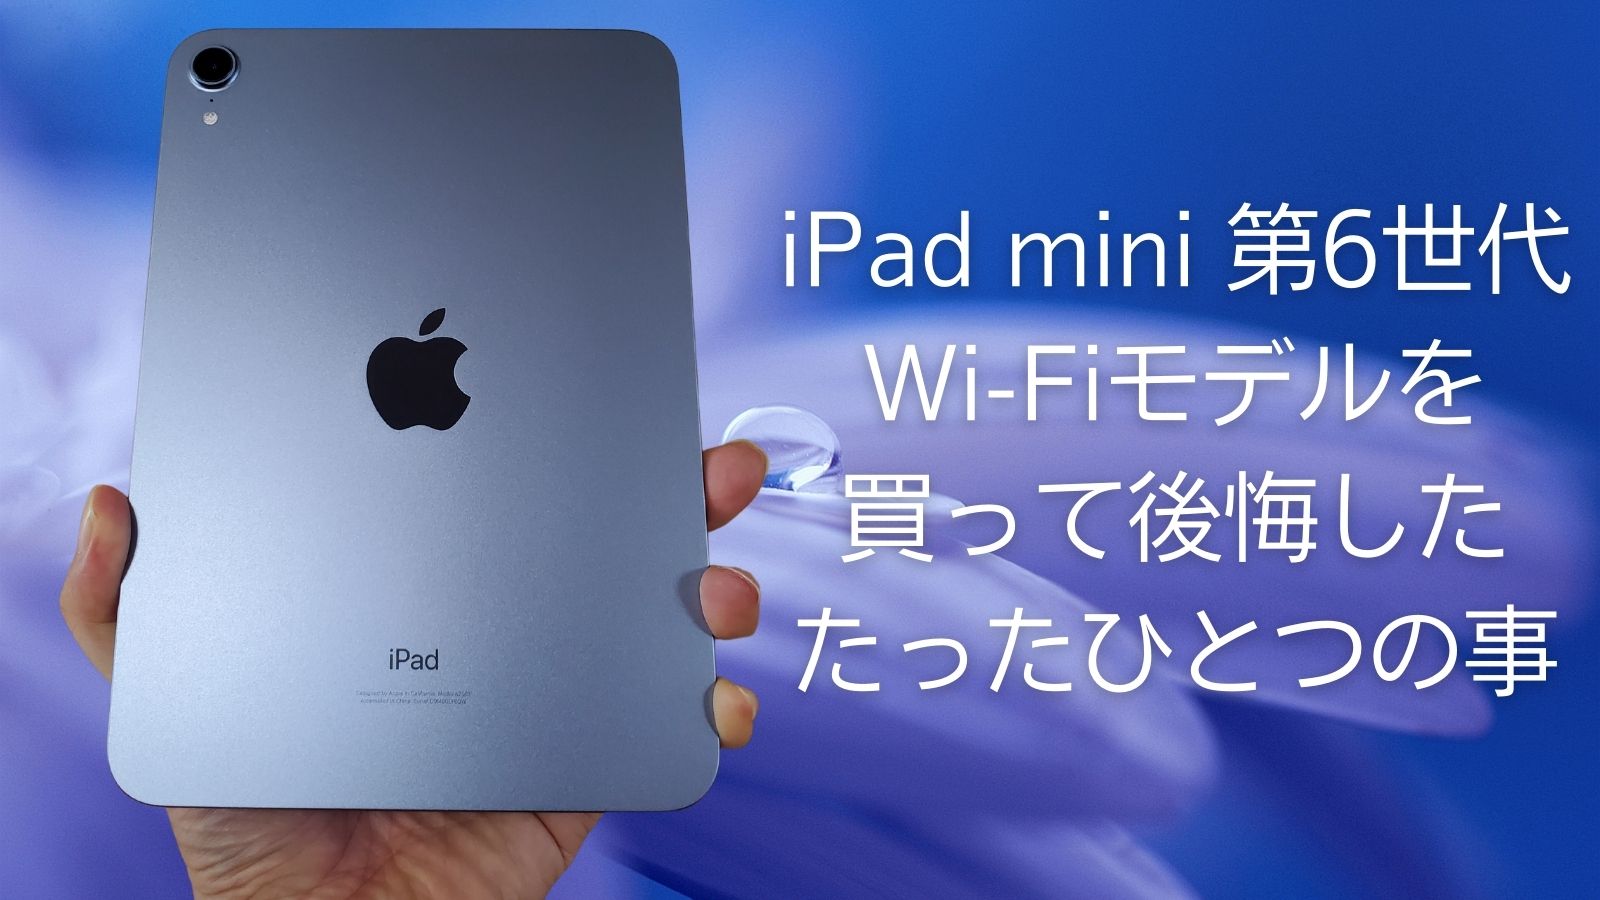 iPad mini 6 Wi-Fi 64GB + moft 他おまけ PC/タブレット タブレット PC ...